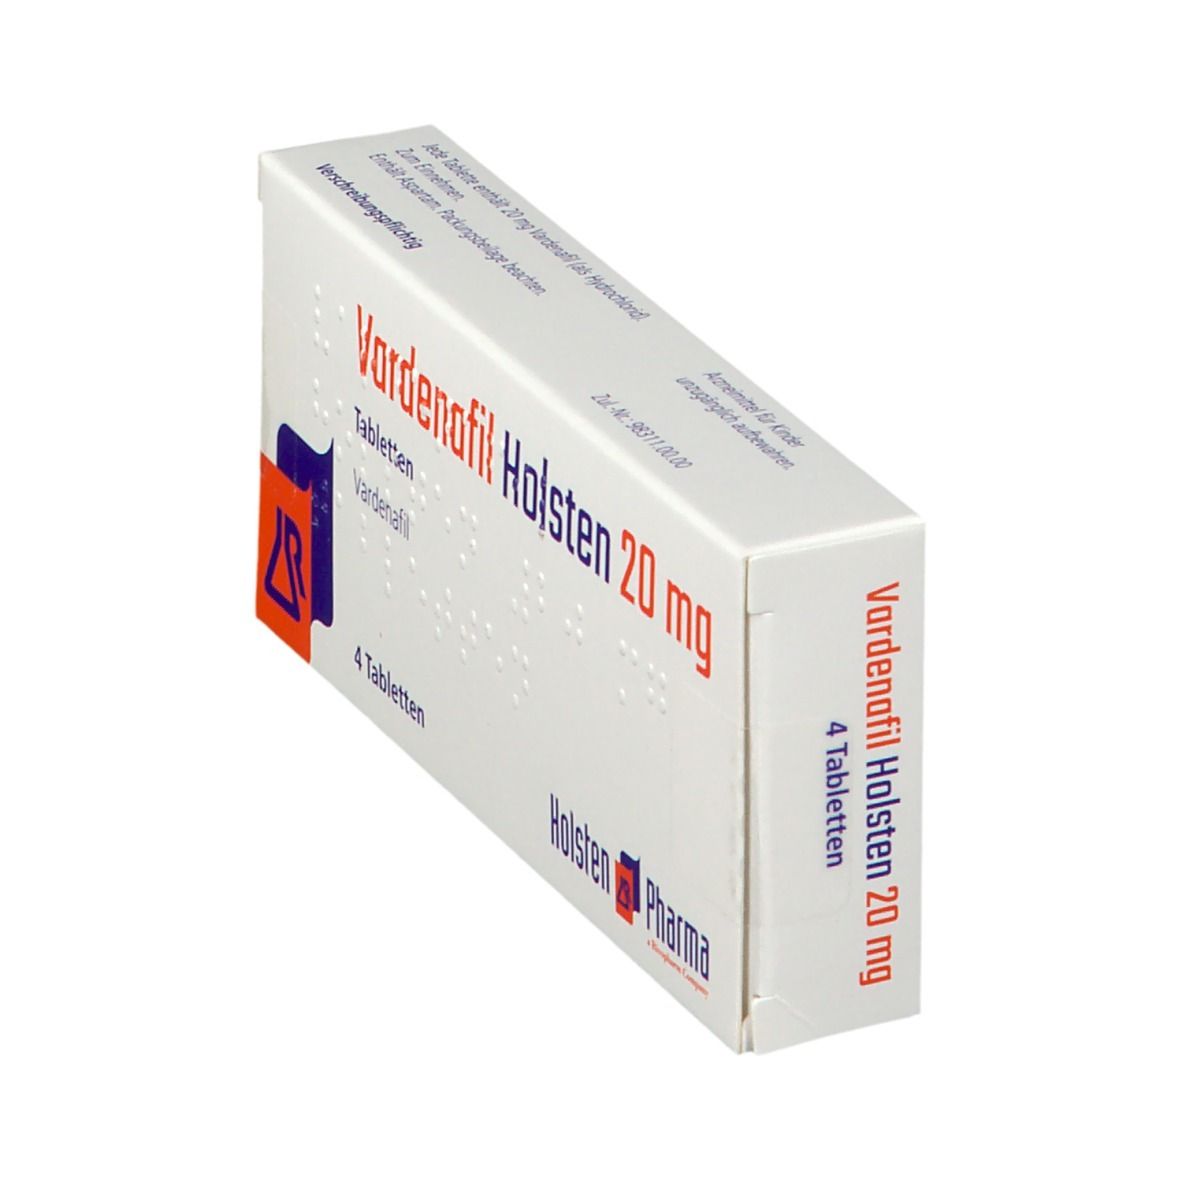 Vardenafil Holsten 20 mg